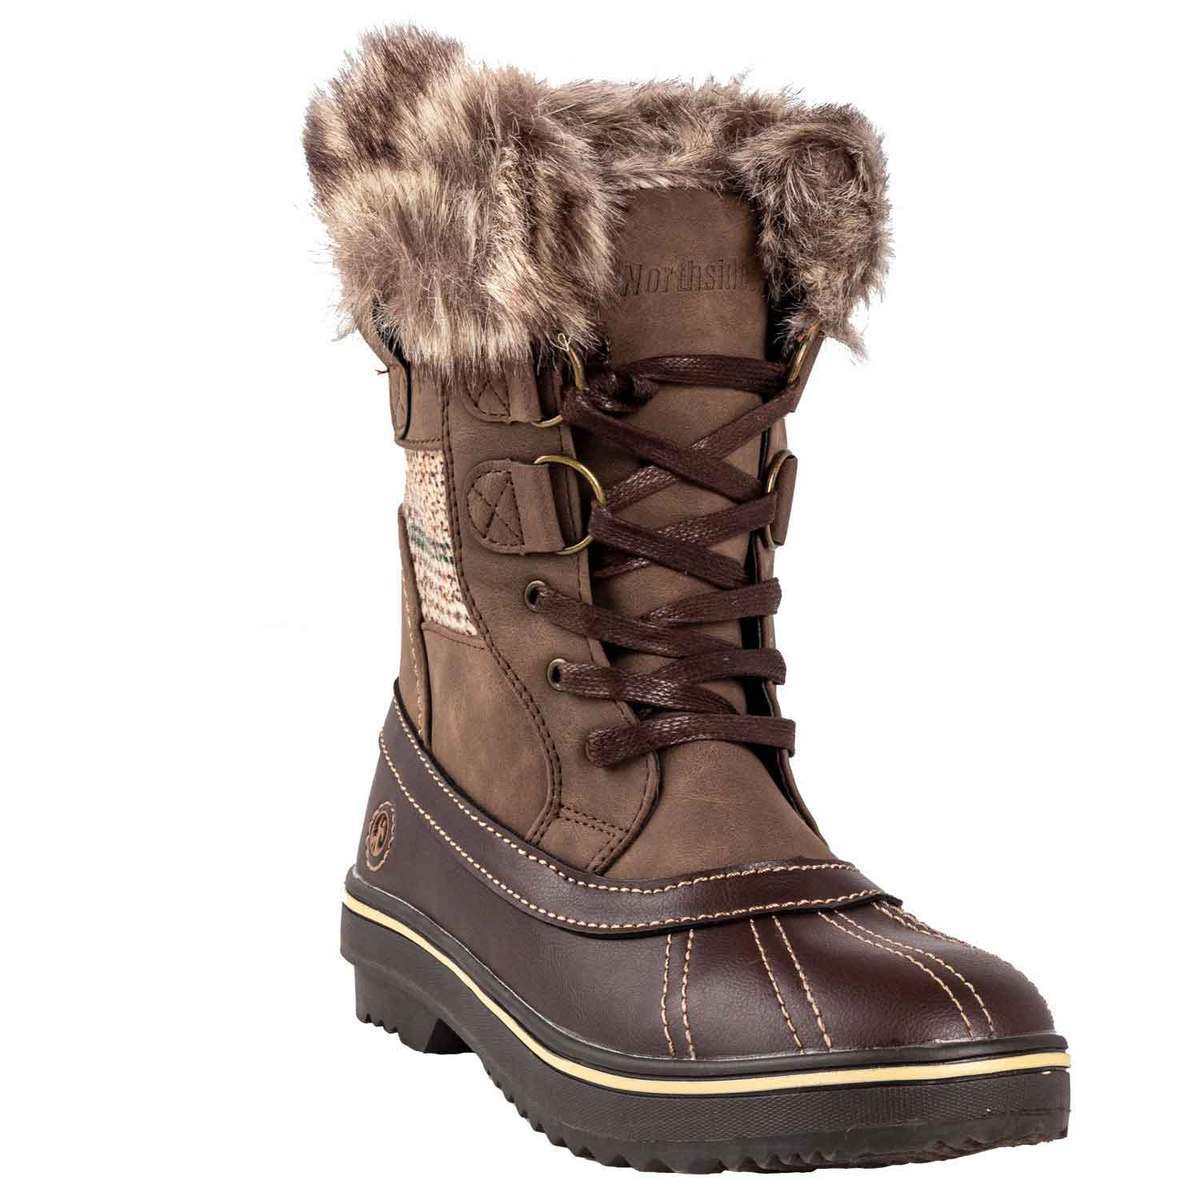 Northside Women's Brookelle Winter Boots - Dark Brown - Size 7 - Dark ...